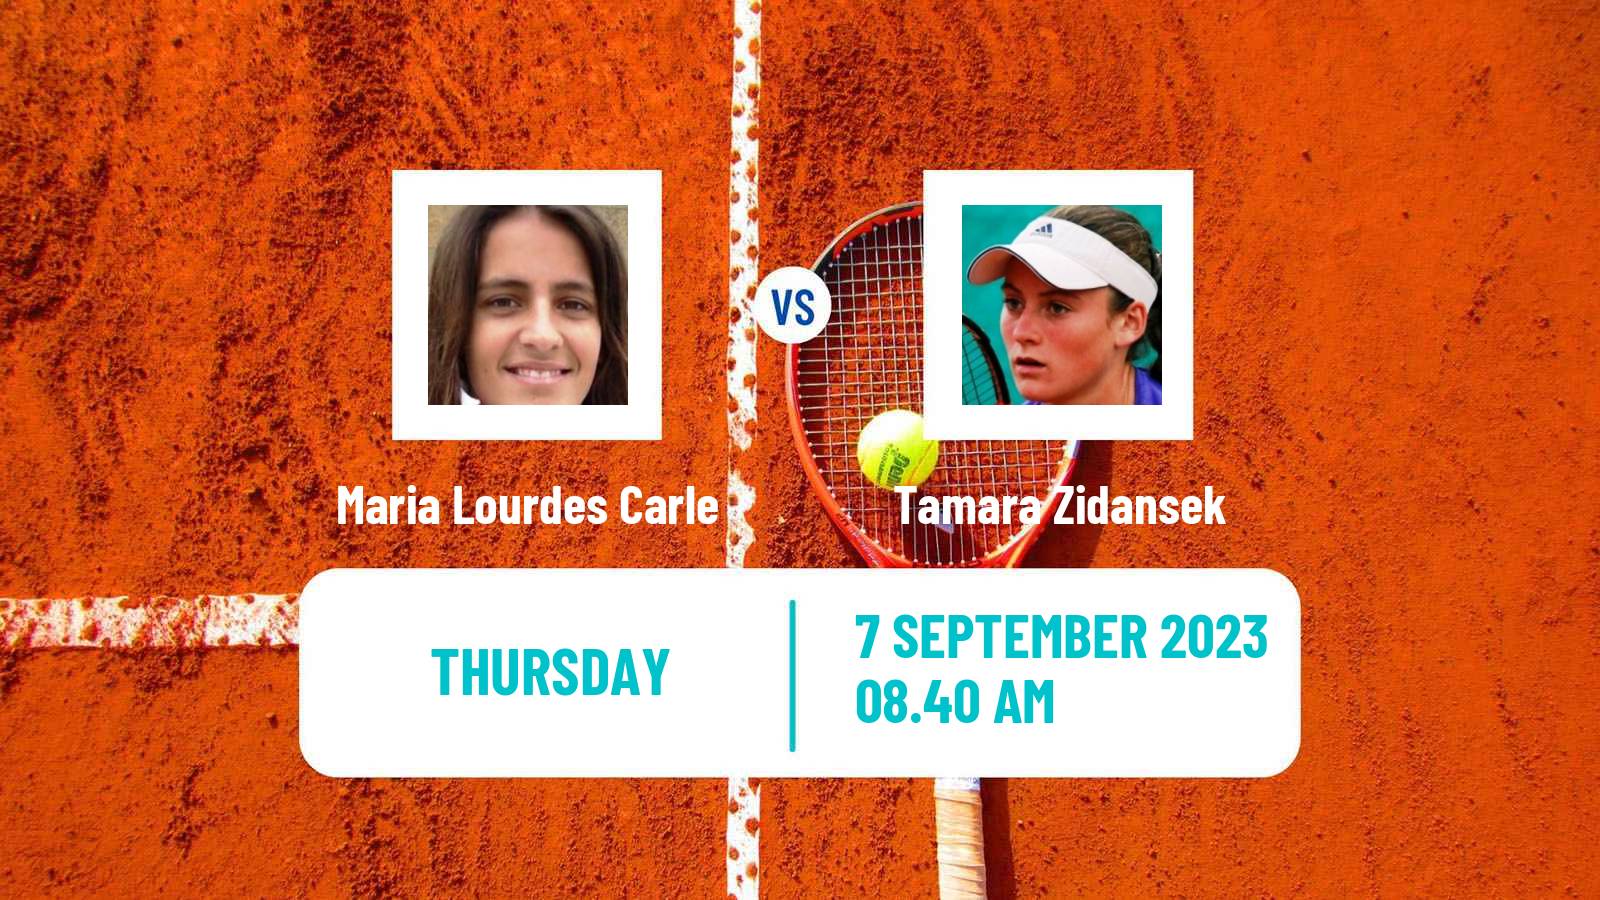 Tennis Bari Challenger Women Maria Lourdes Carle - Tamara Zidansek